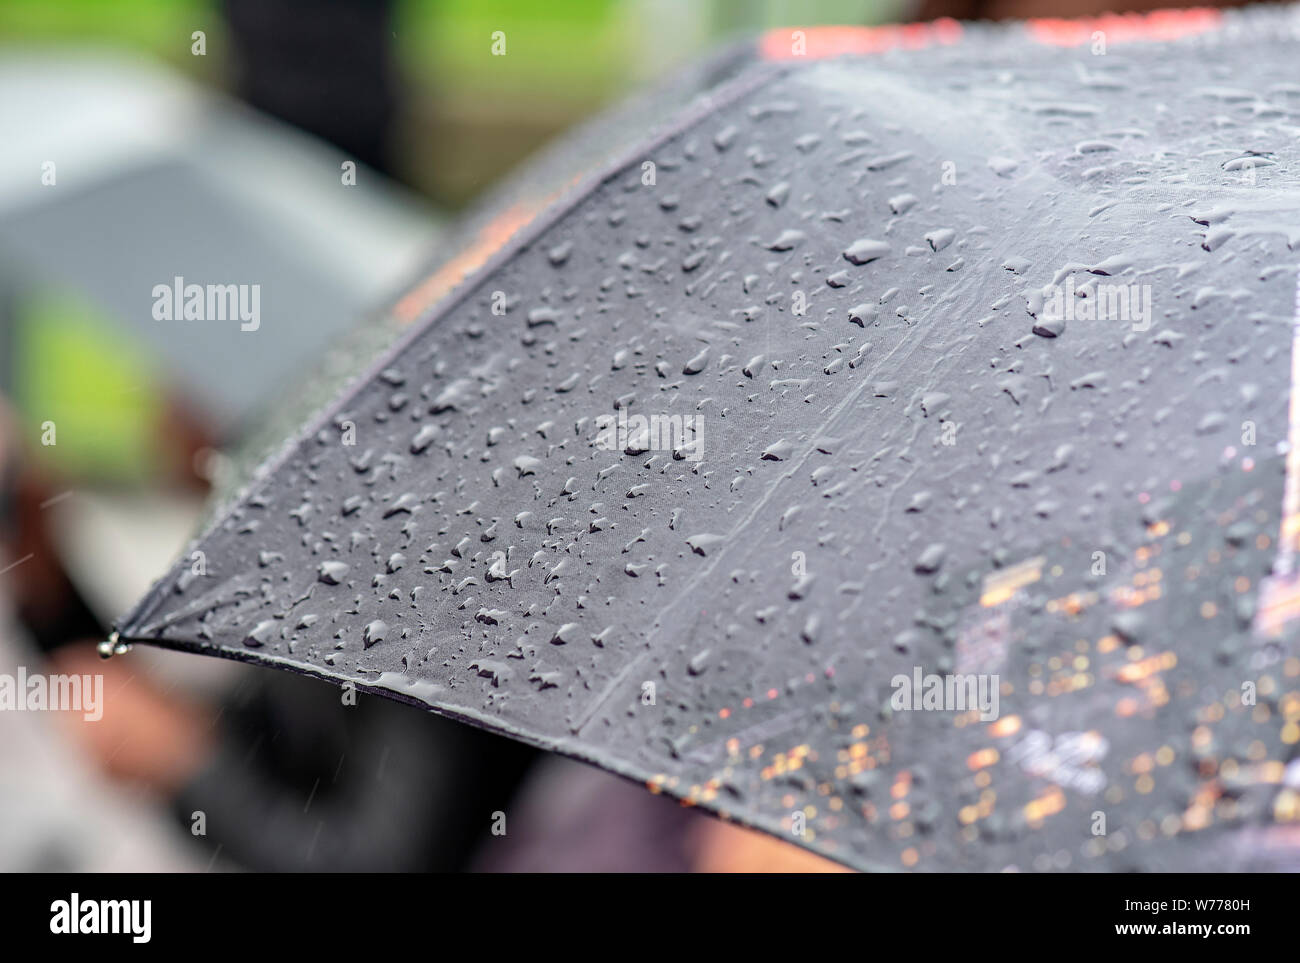 Jour de pluie, de fortes pluies en ville, tombe sur la surface du cadre noir, les gens avec des parasols au cours de tempête Banque D'Images